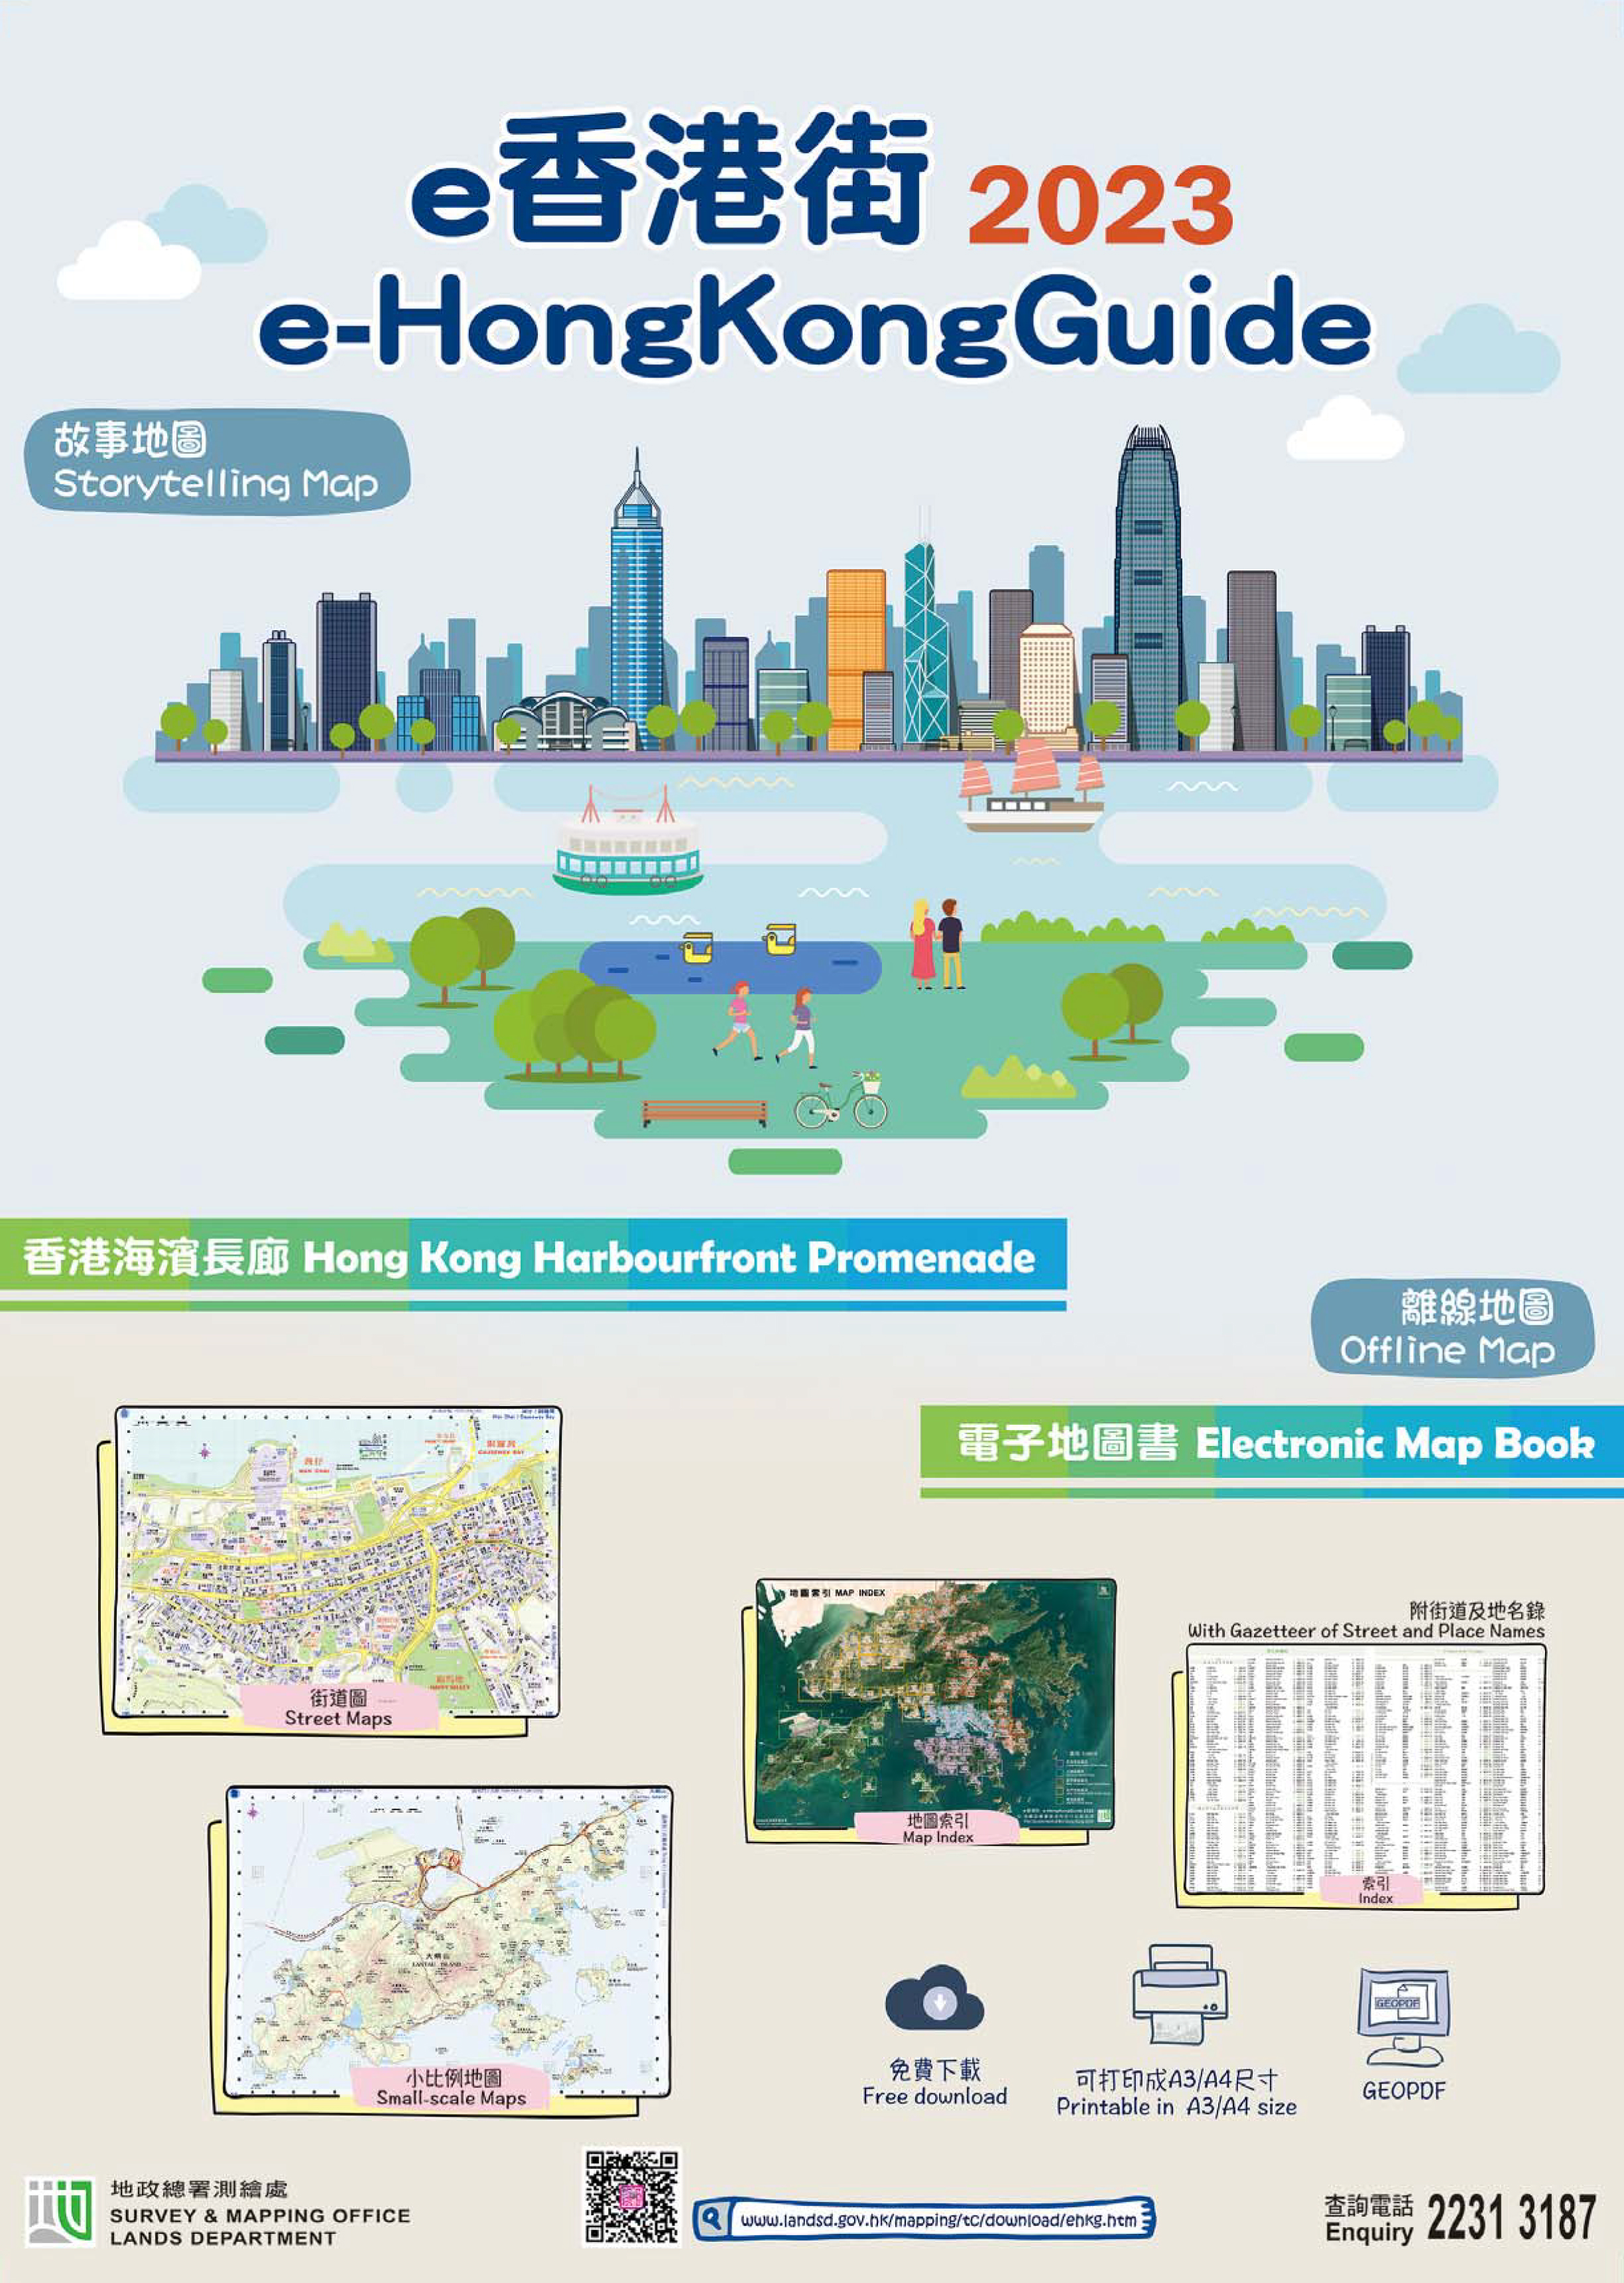 e-HongKongGuide 2023